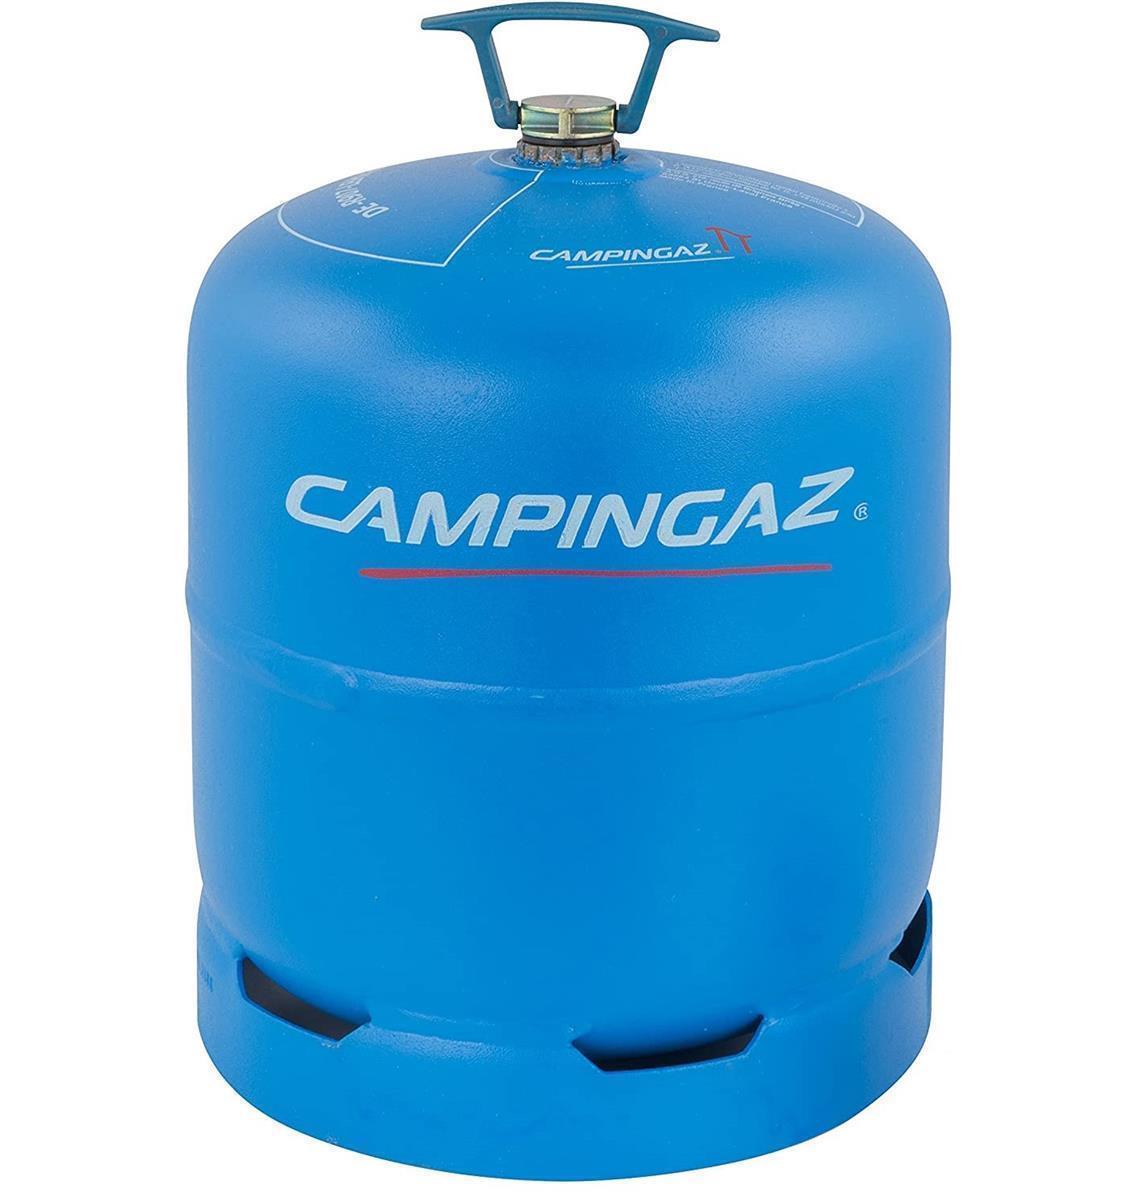 Cocina de gas campingaz camping kitchen 2 de, 2000035520